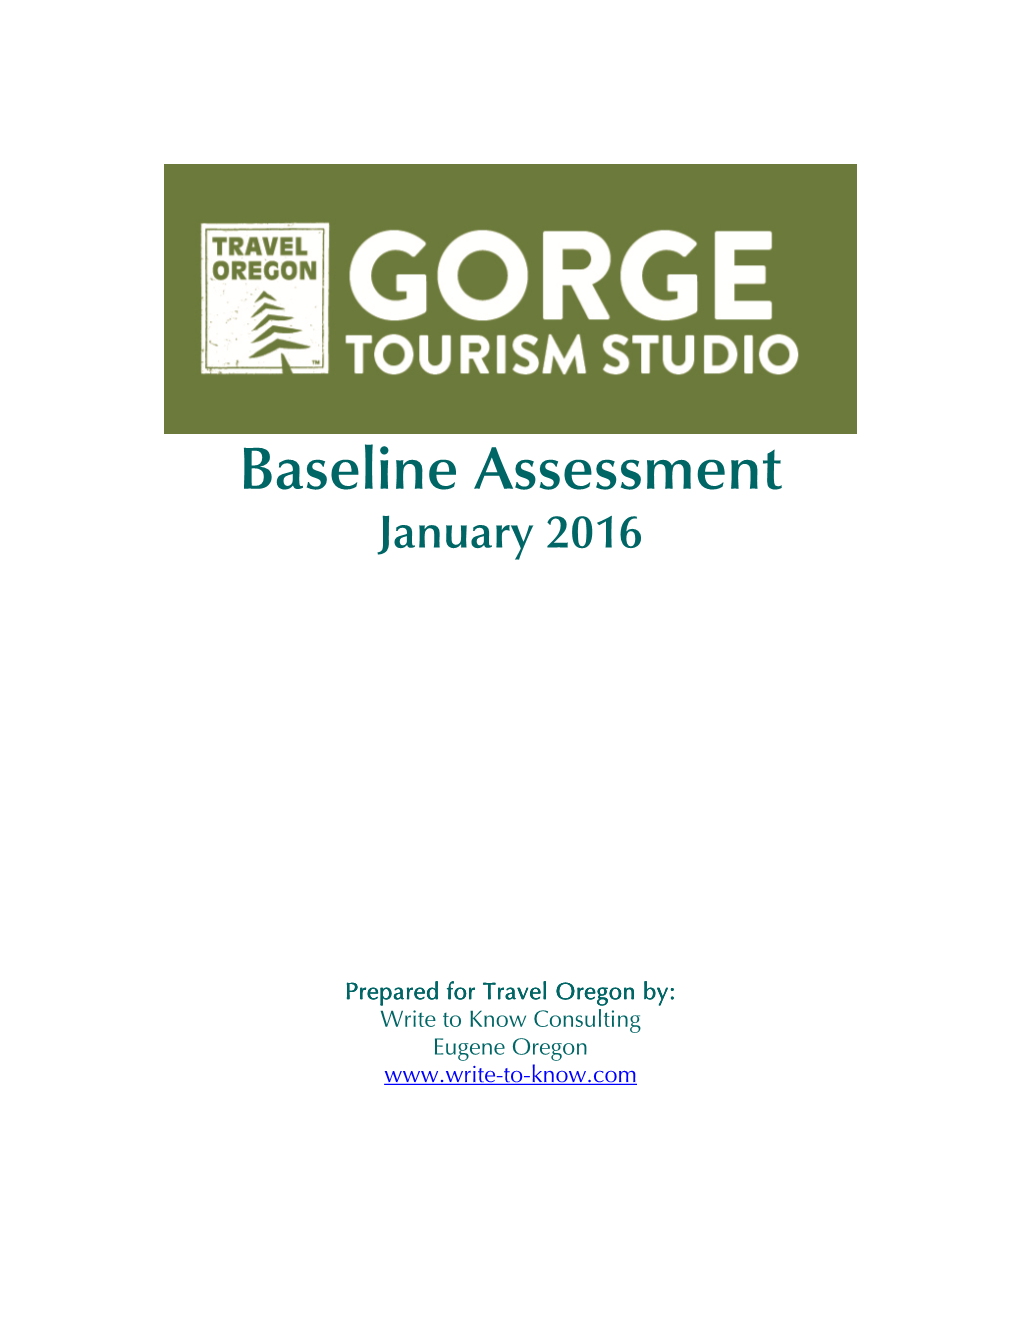 Baseline Assessment January 2016